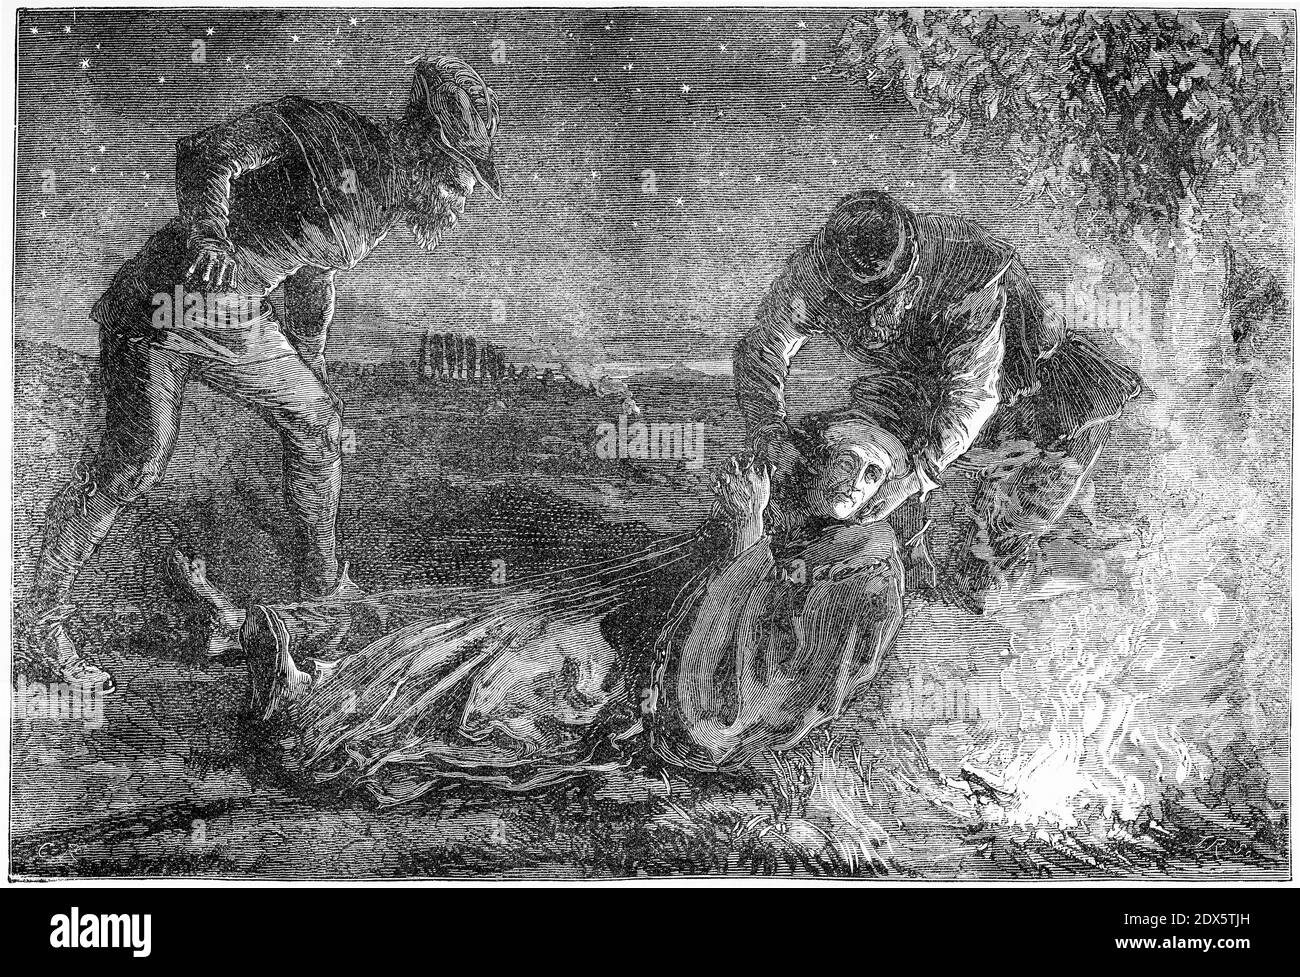 Incisione di Ulrich Zwingli alla sua morte nel 1531 presso Kappel dopo una battaglia con i cinque stati. Illustrazione da 'la storia del Protestantismo' di James Aitken Wylie (1808-1890), pub. 1878 Foto Stock